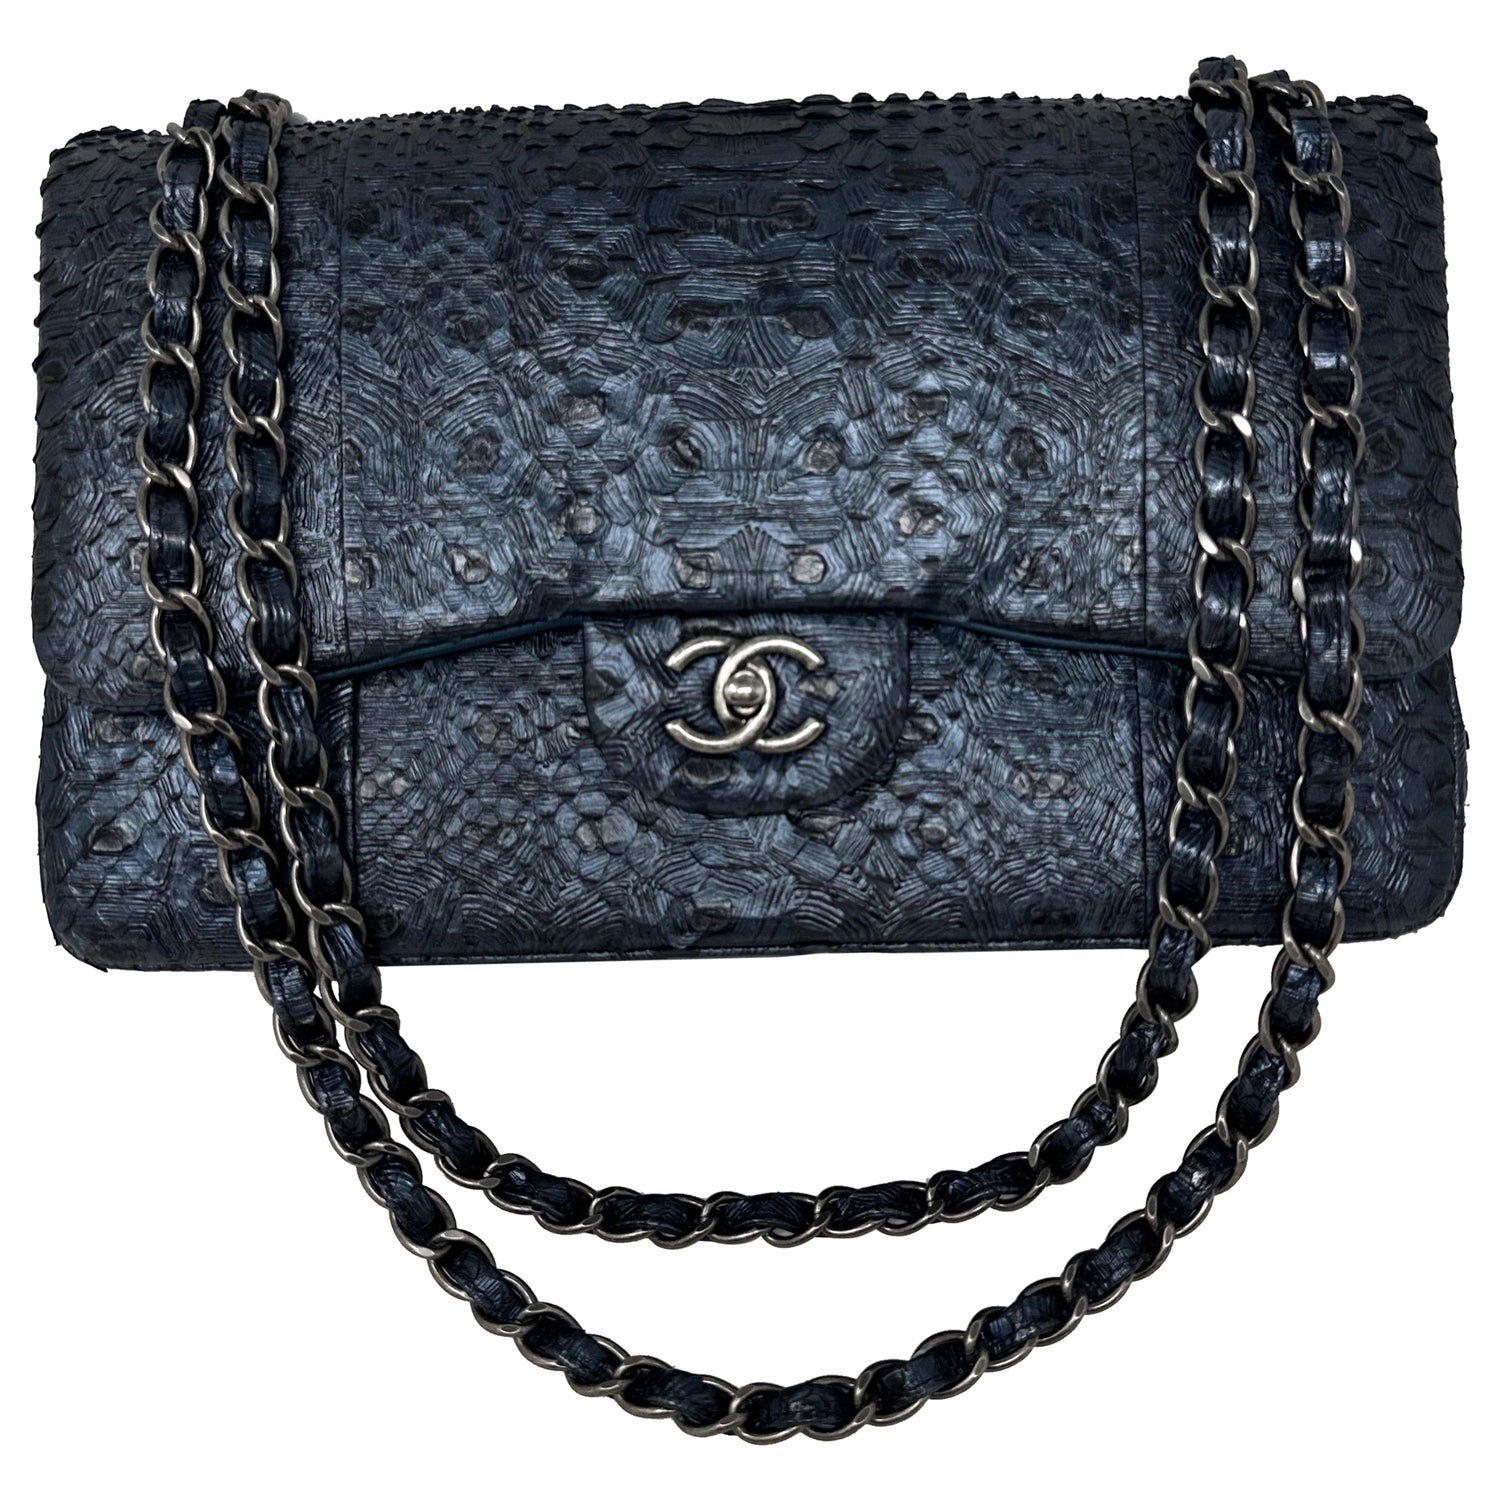 Chanel | Python Snakeskin Bag | Beige Tan | 25171080 | BRAND NEW MEGA RARE!  💫💖